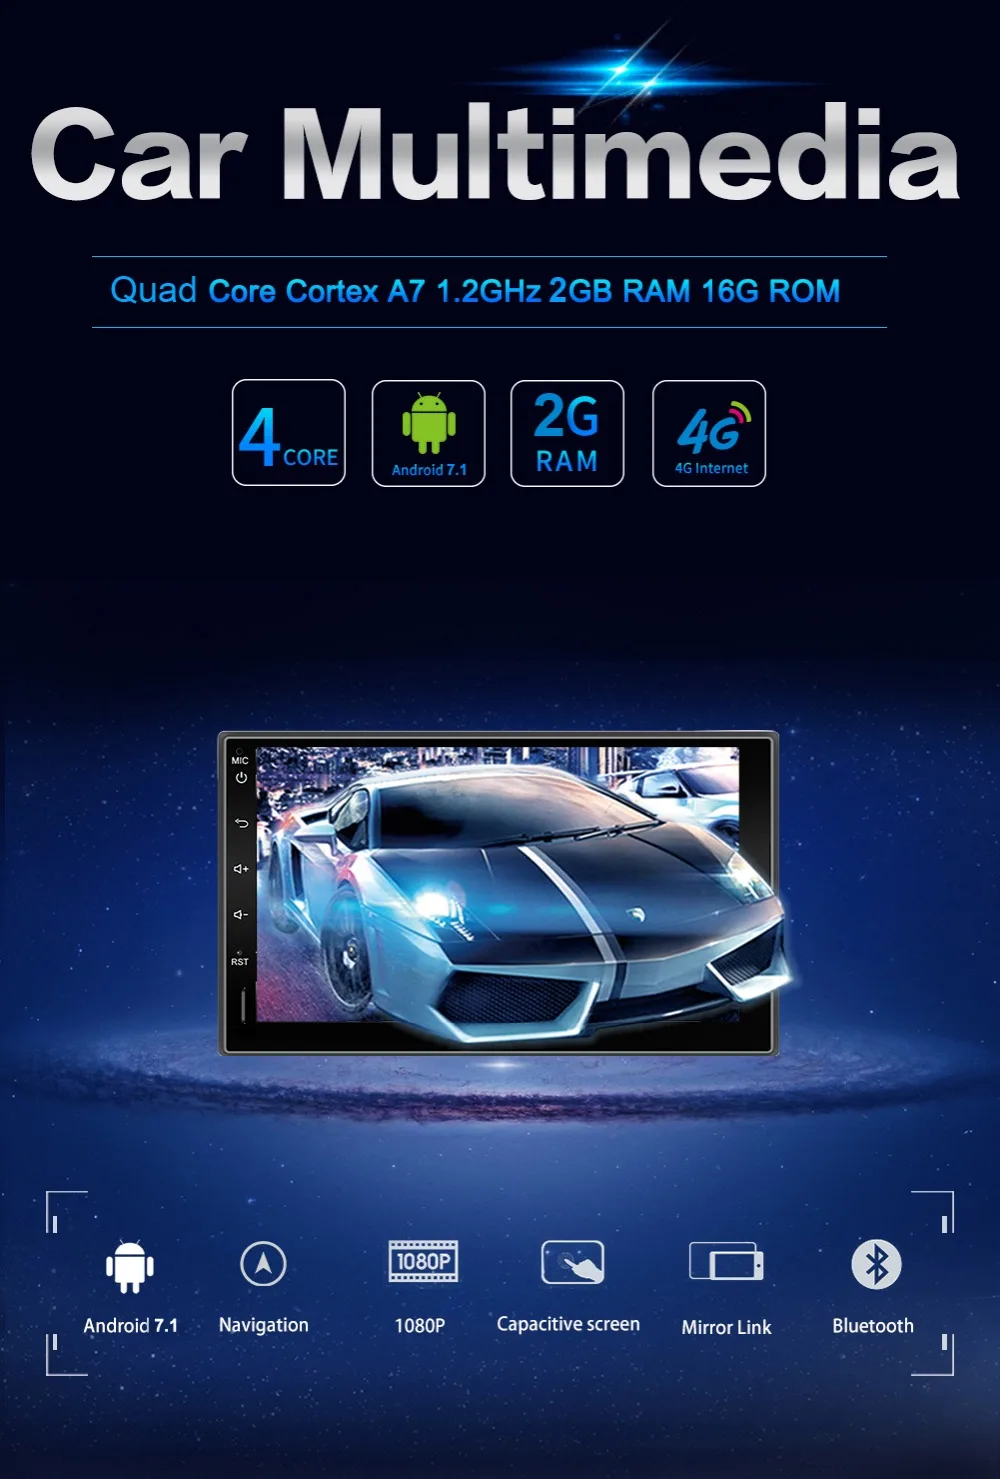 2Din Android Ram 2G четырехъядерный автомобильный dvd Fit NISSAN QASHQAI Tiida Универсальное автомобильное радио с gps wifi 4G/3g RDS камера рулевого колеса